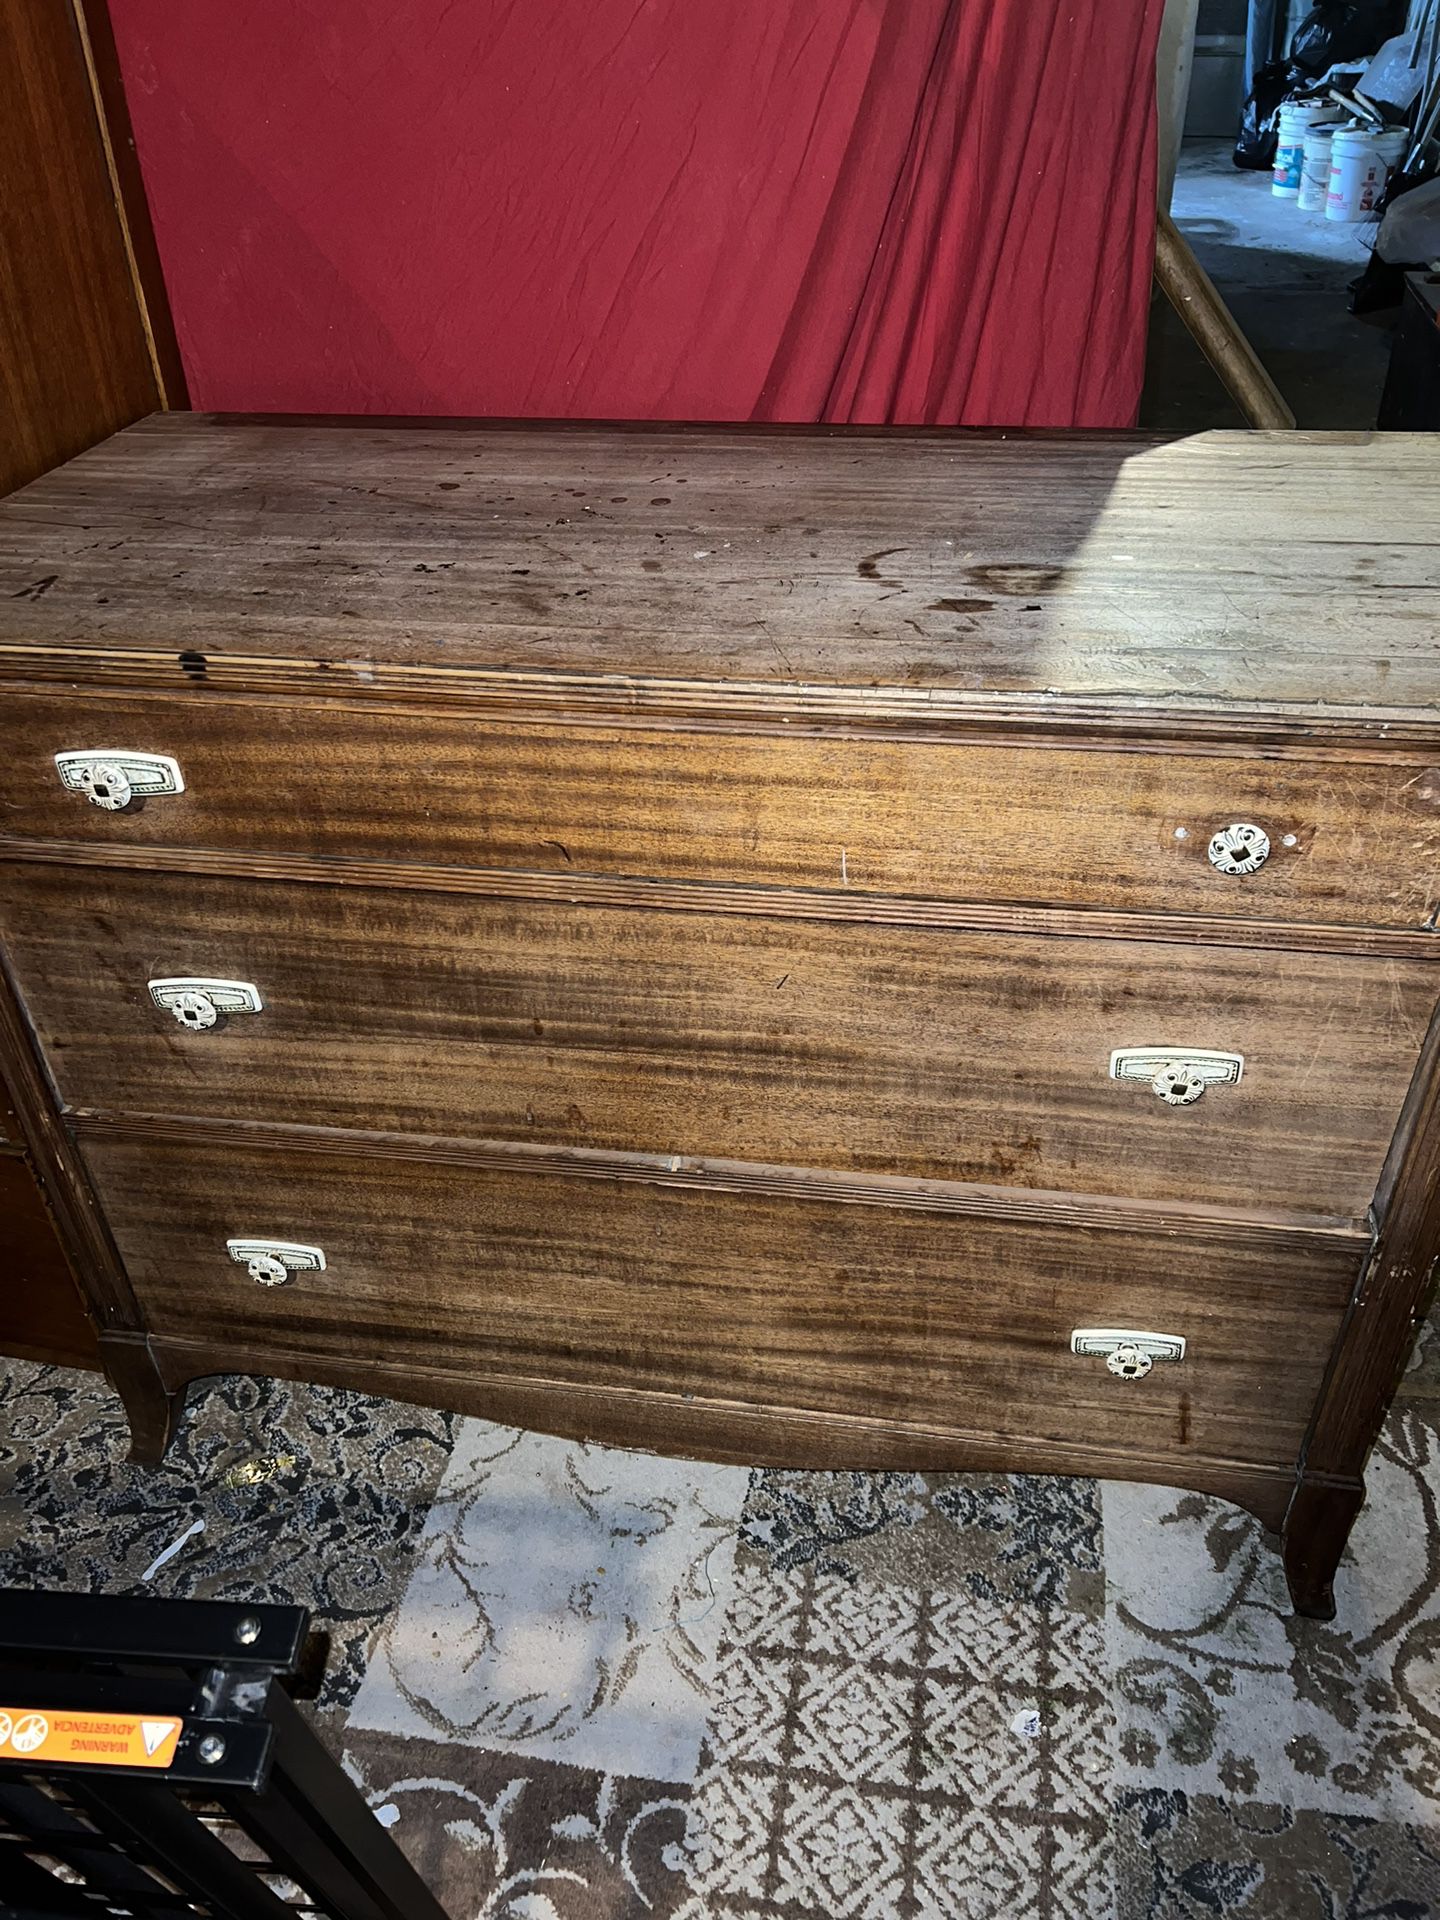 Old Antique Solid Wood Dresser 